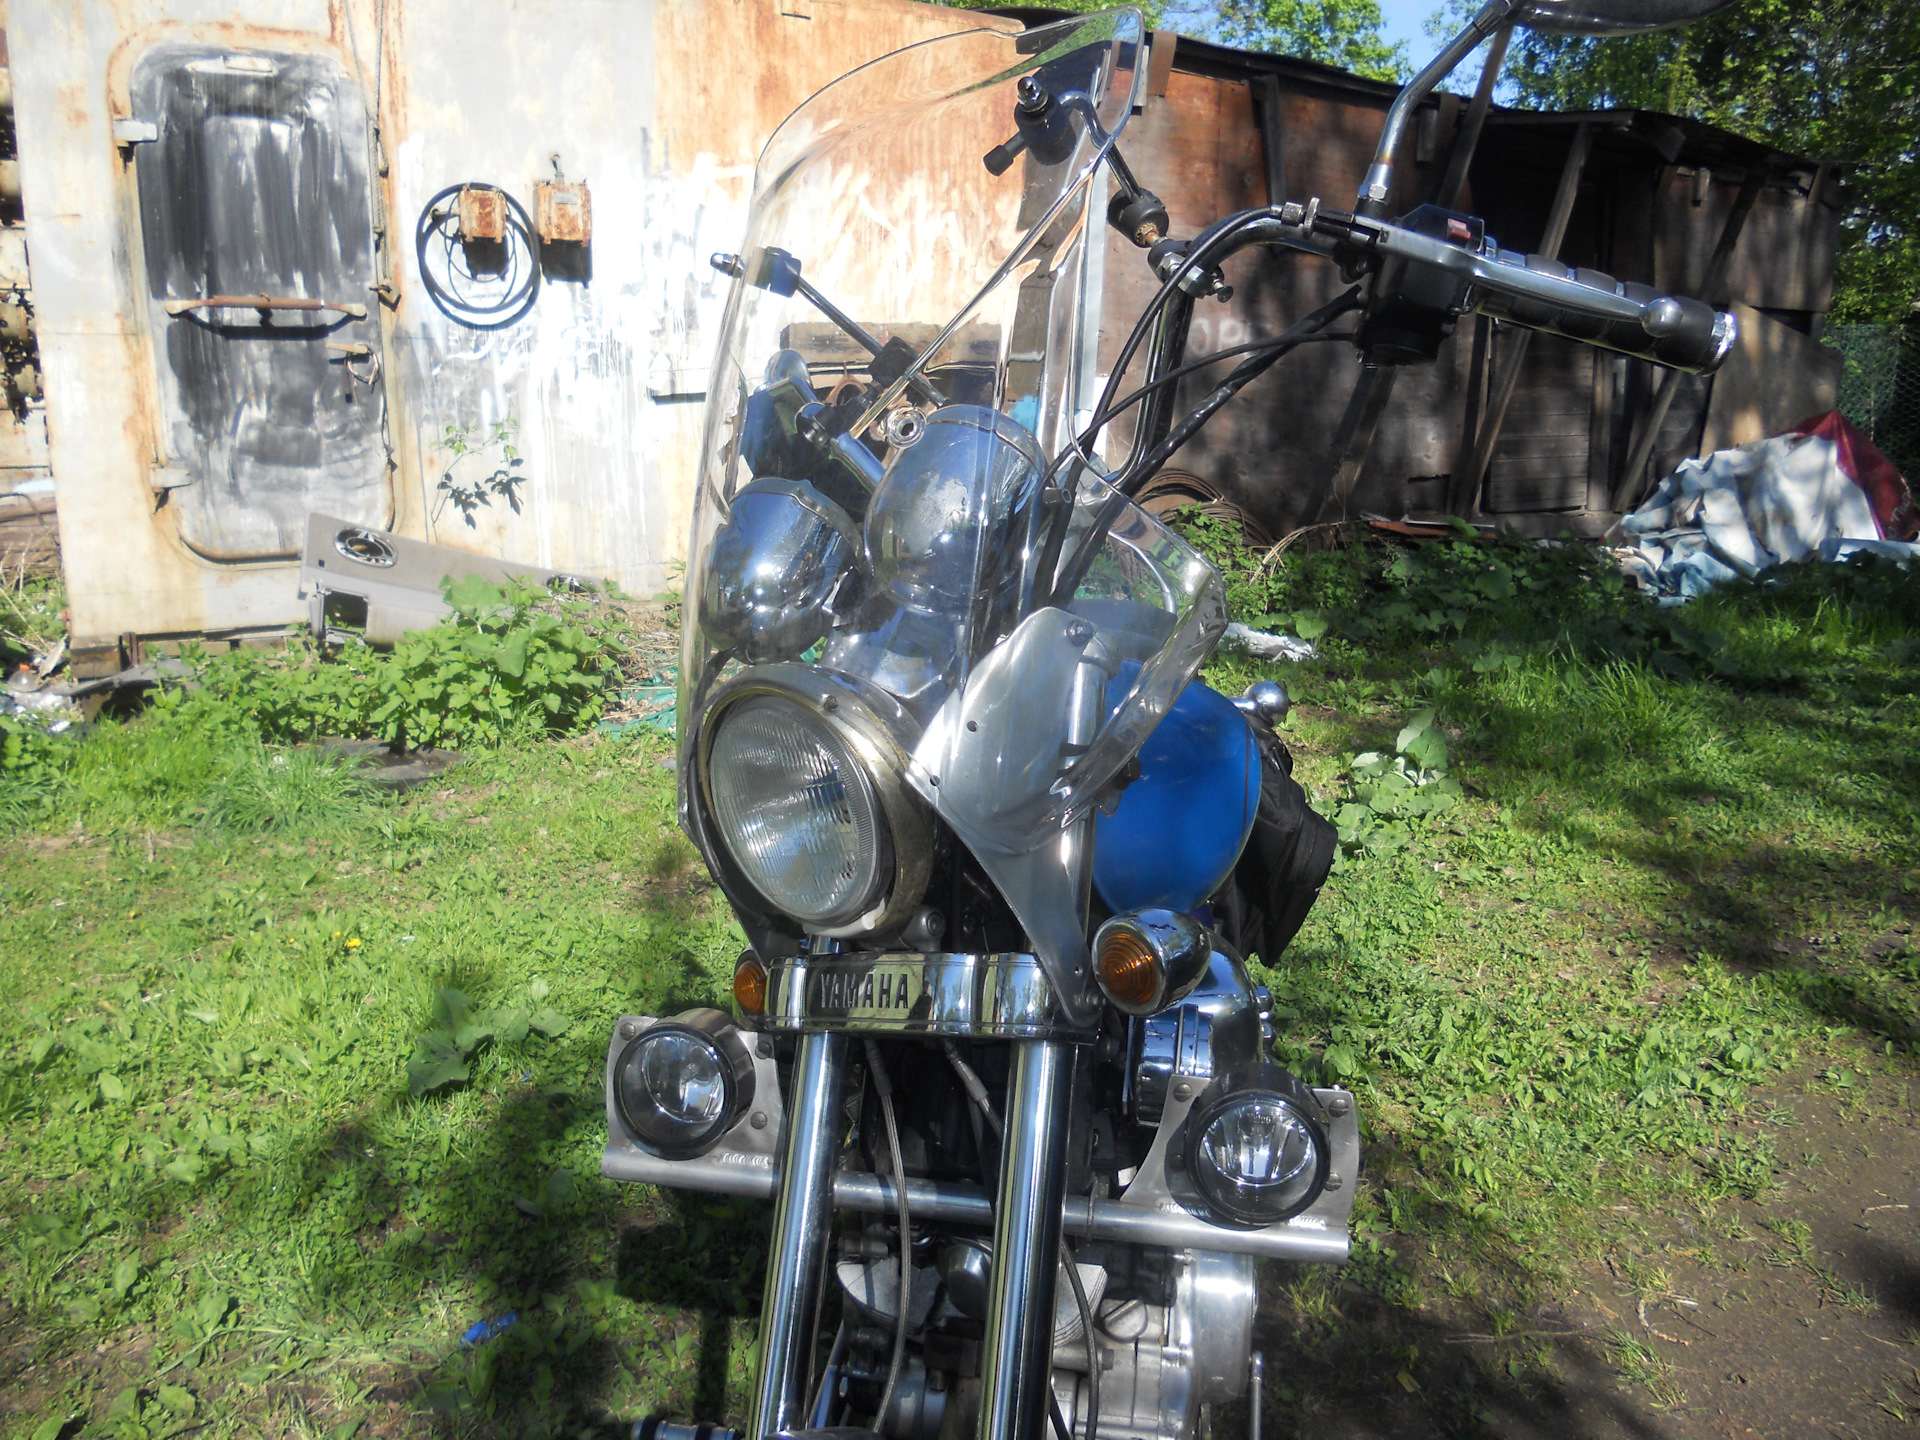 Мотоцикл yamaha virago (ямаха вираго) 400 - малокубатурная «ведьма» для начинающих мотолюбителей